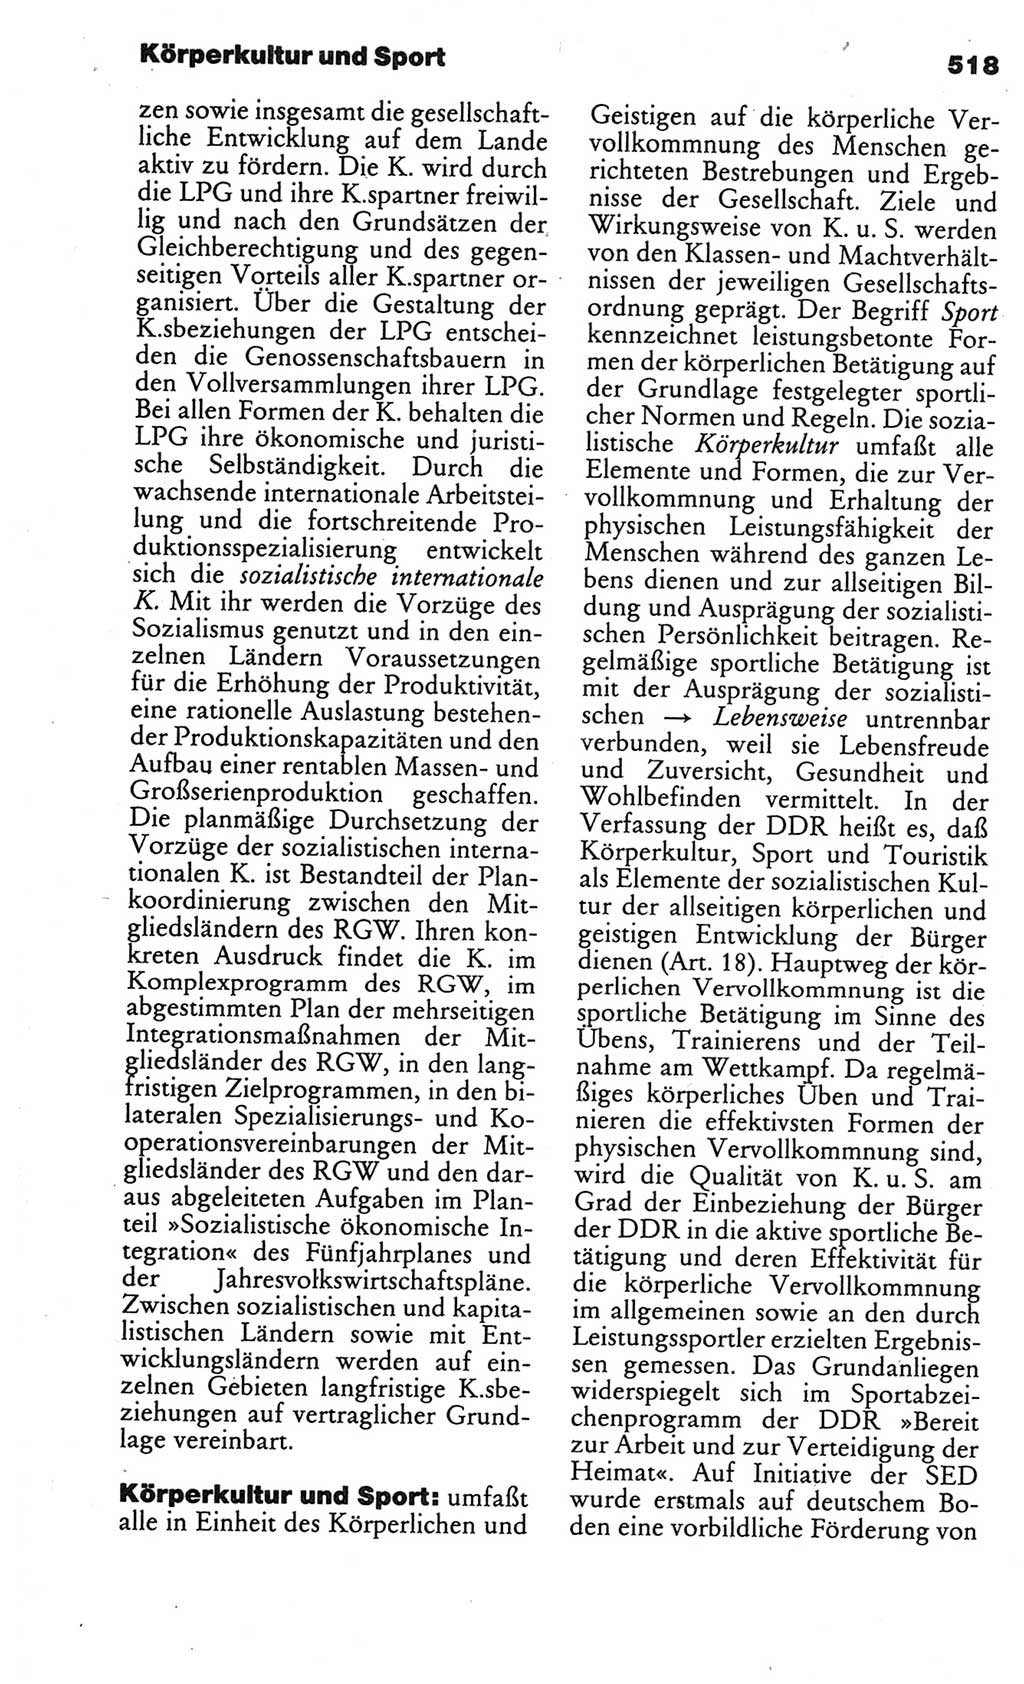 Kleines politisches Wörterbuch [Deutsche Demokratische Republik (DDR)] 1986, Seite 518 (Kl. pol. Wb. DDR 1986, S. 518)